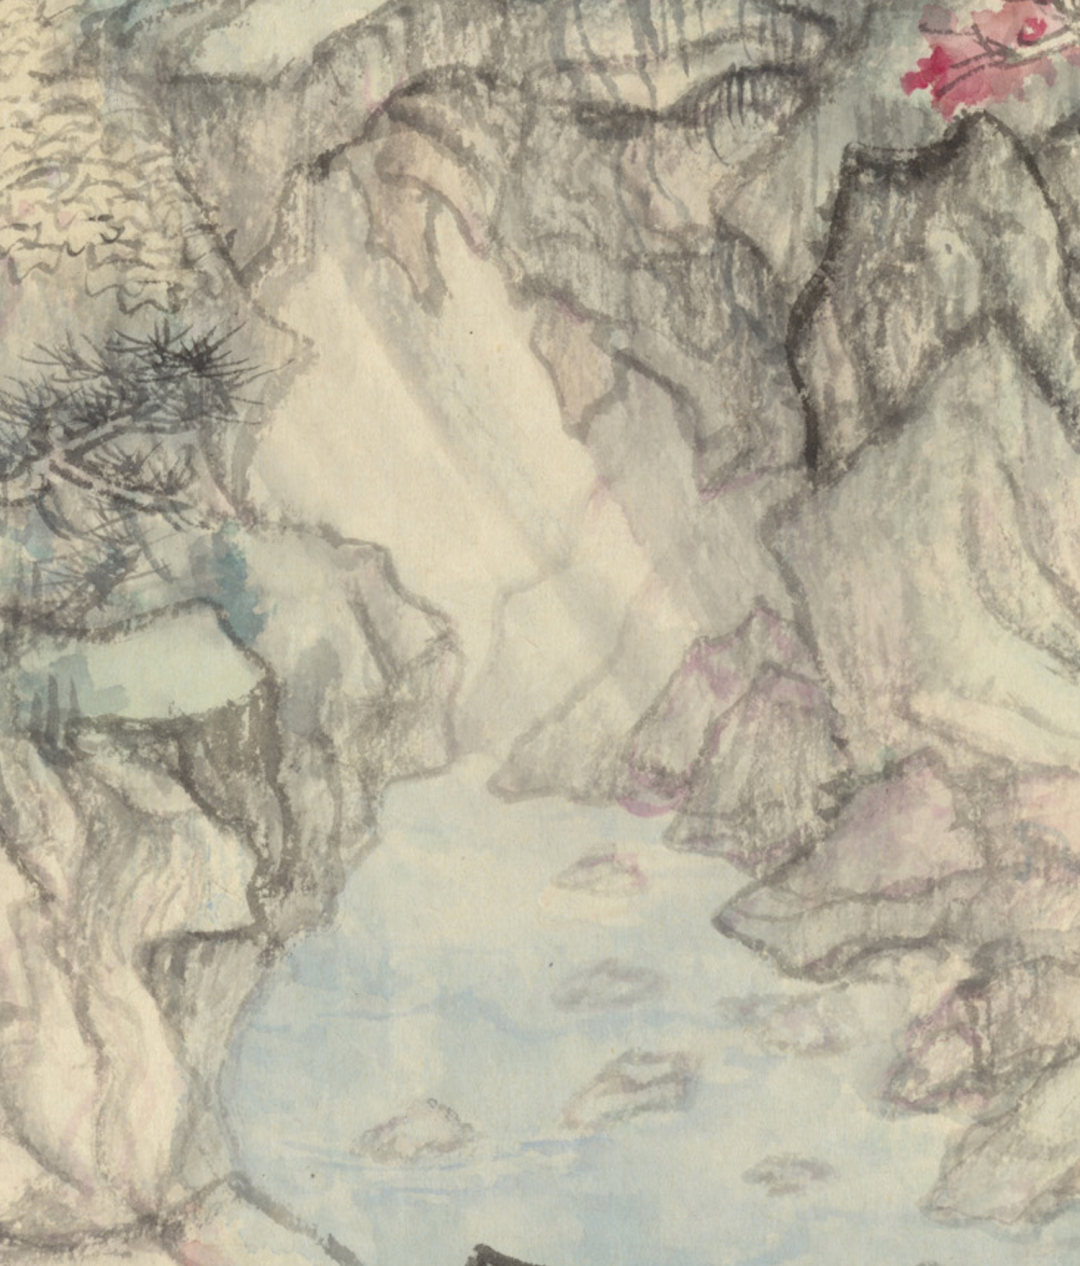 人与山水相望相化——著名画家丘挺《桃花源》系列诠释中国文化精神的理想幻境